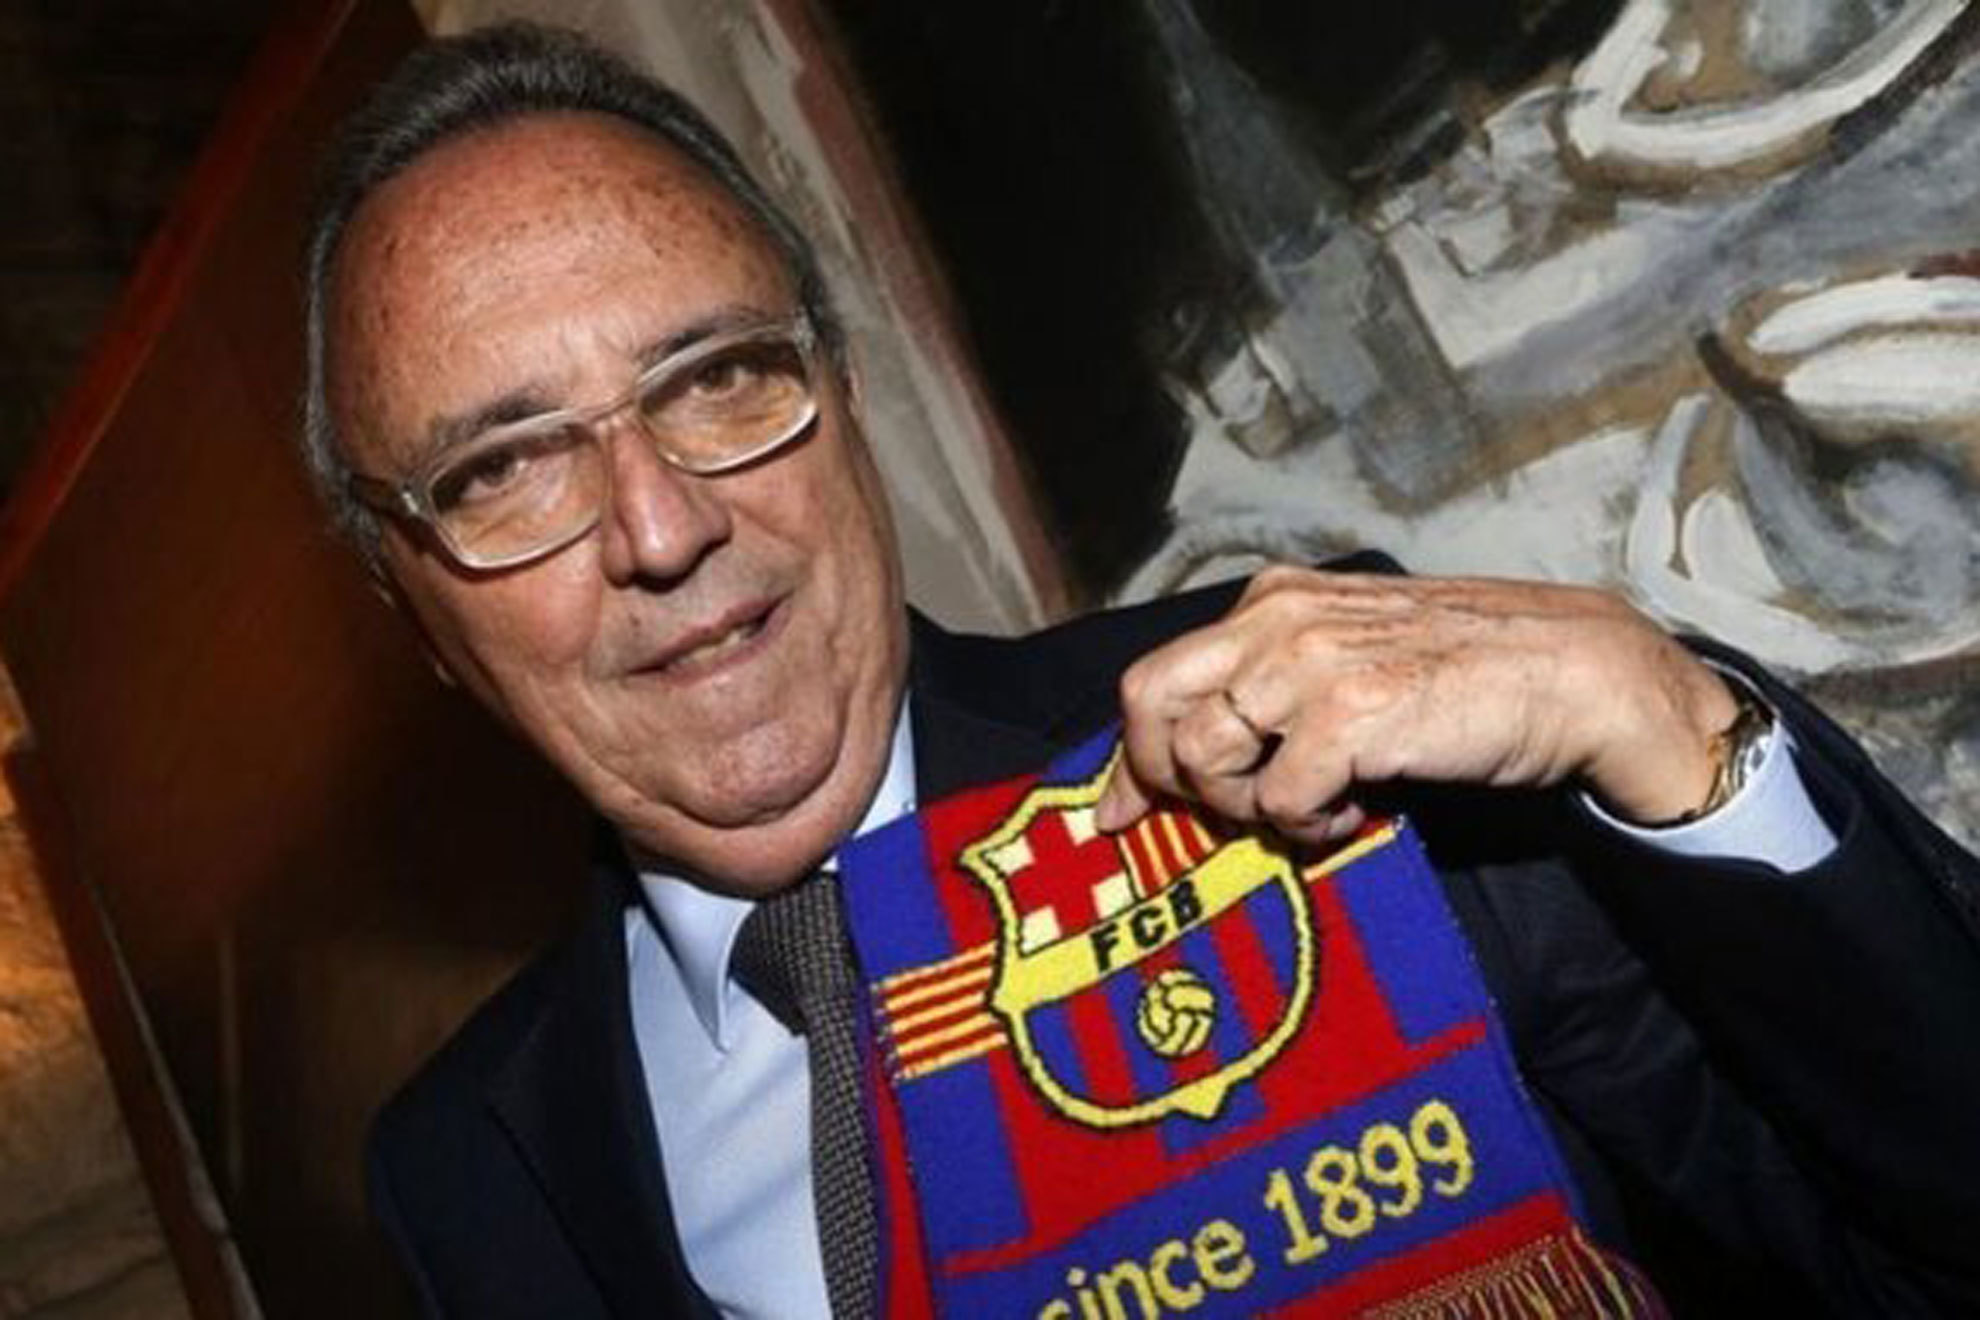 "Y el Madrid se qued con Di Stfano que era del Bara..."